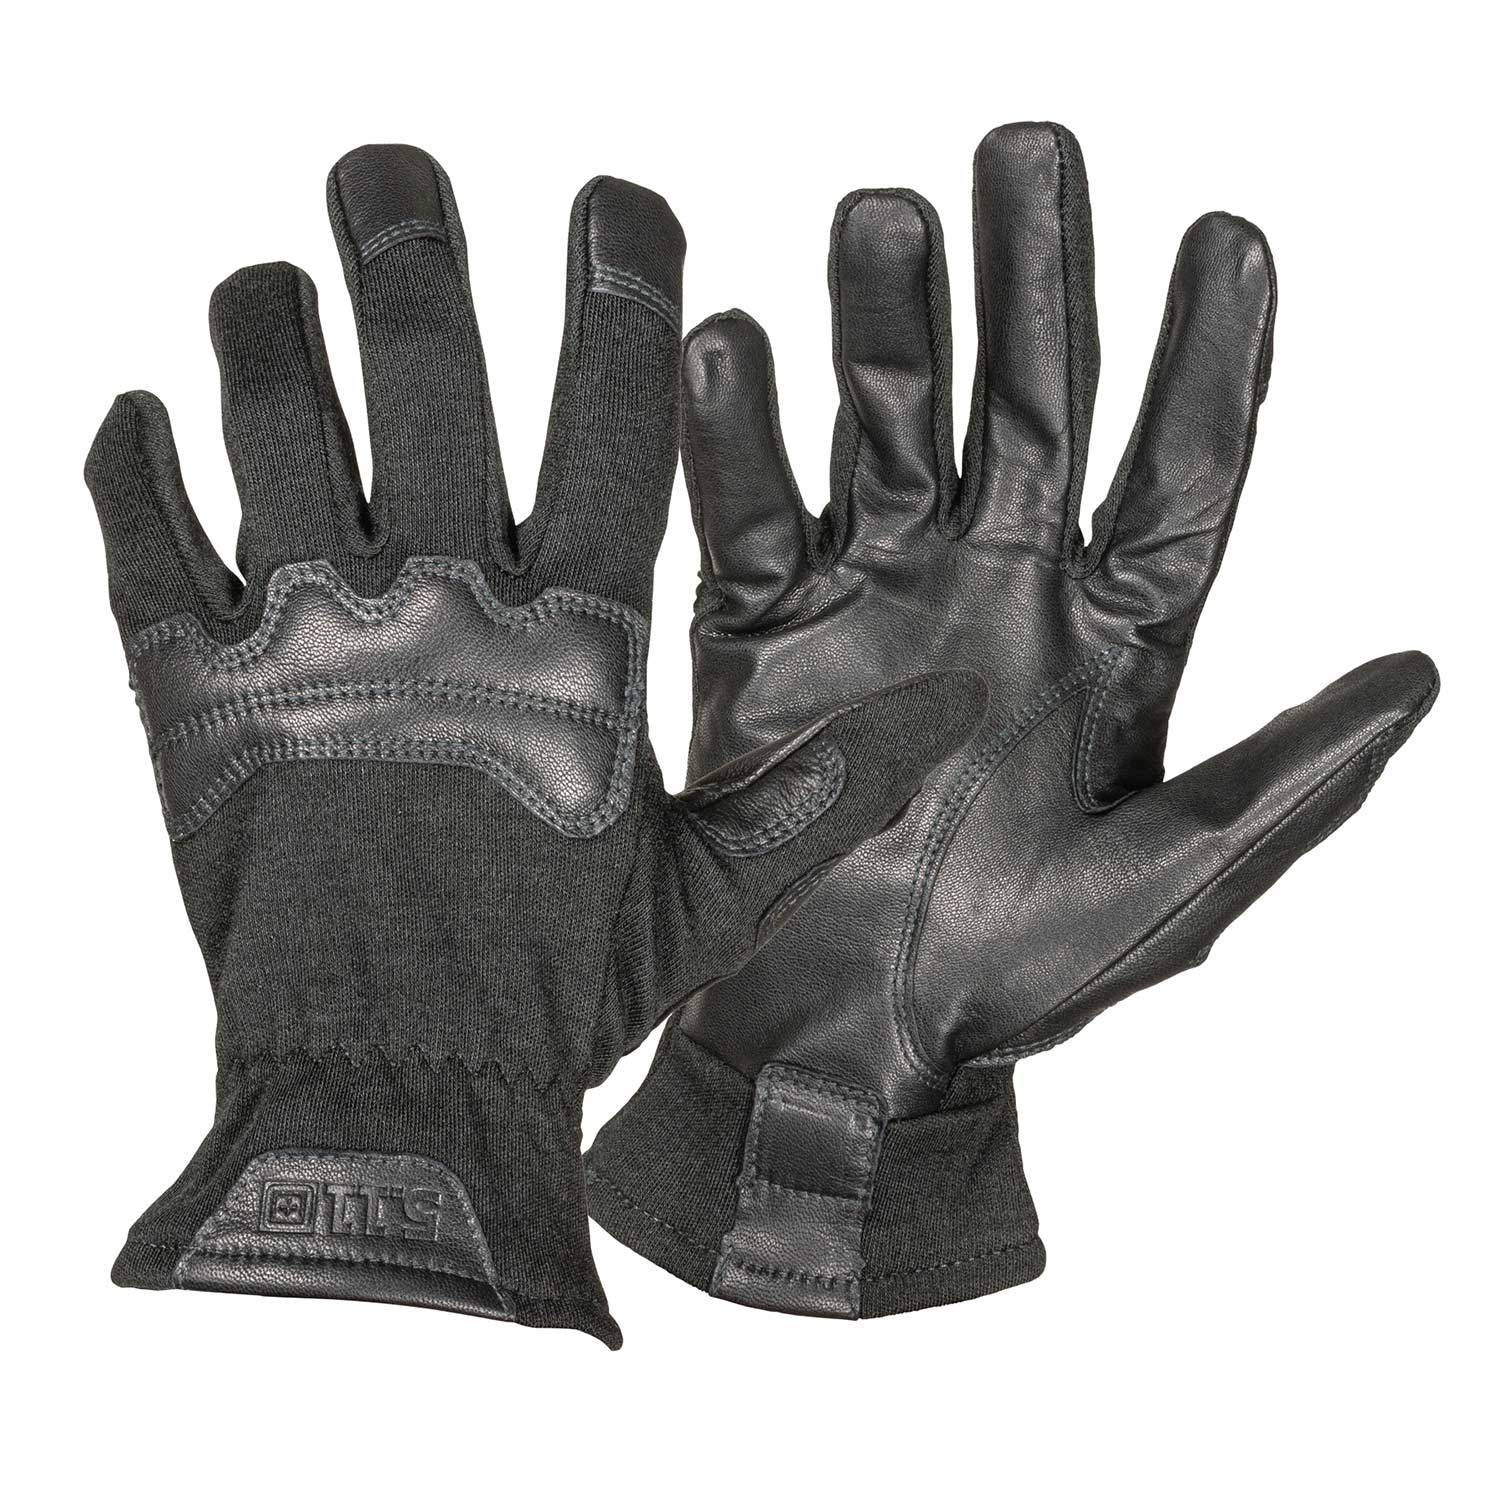 5.11 Foxtrot FR Gloves